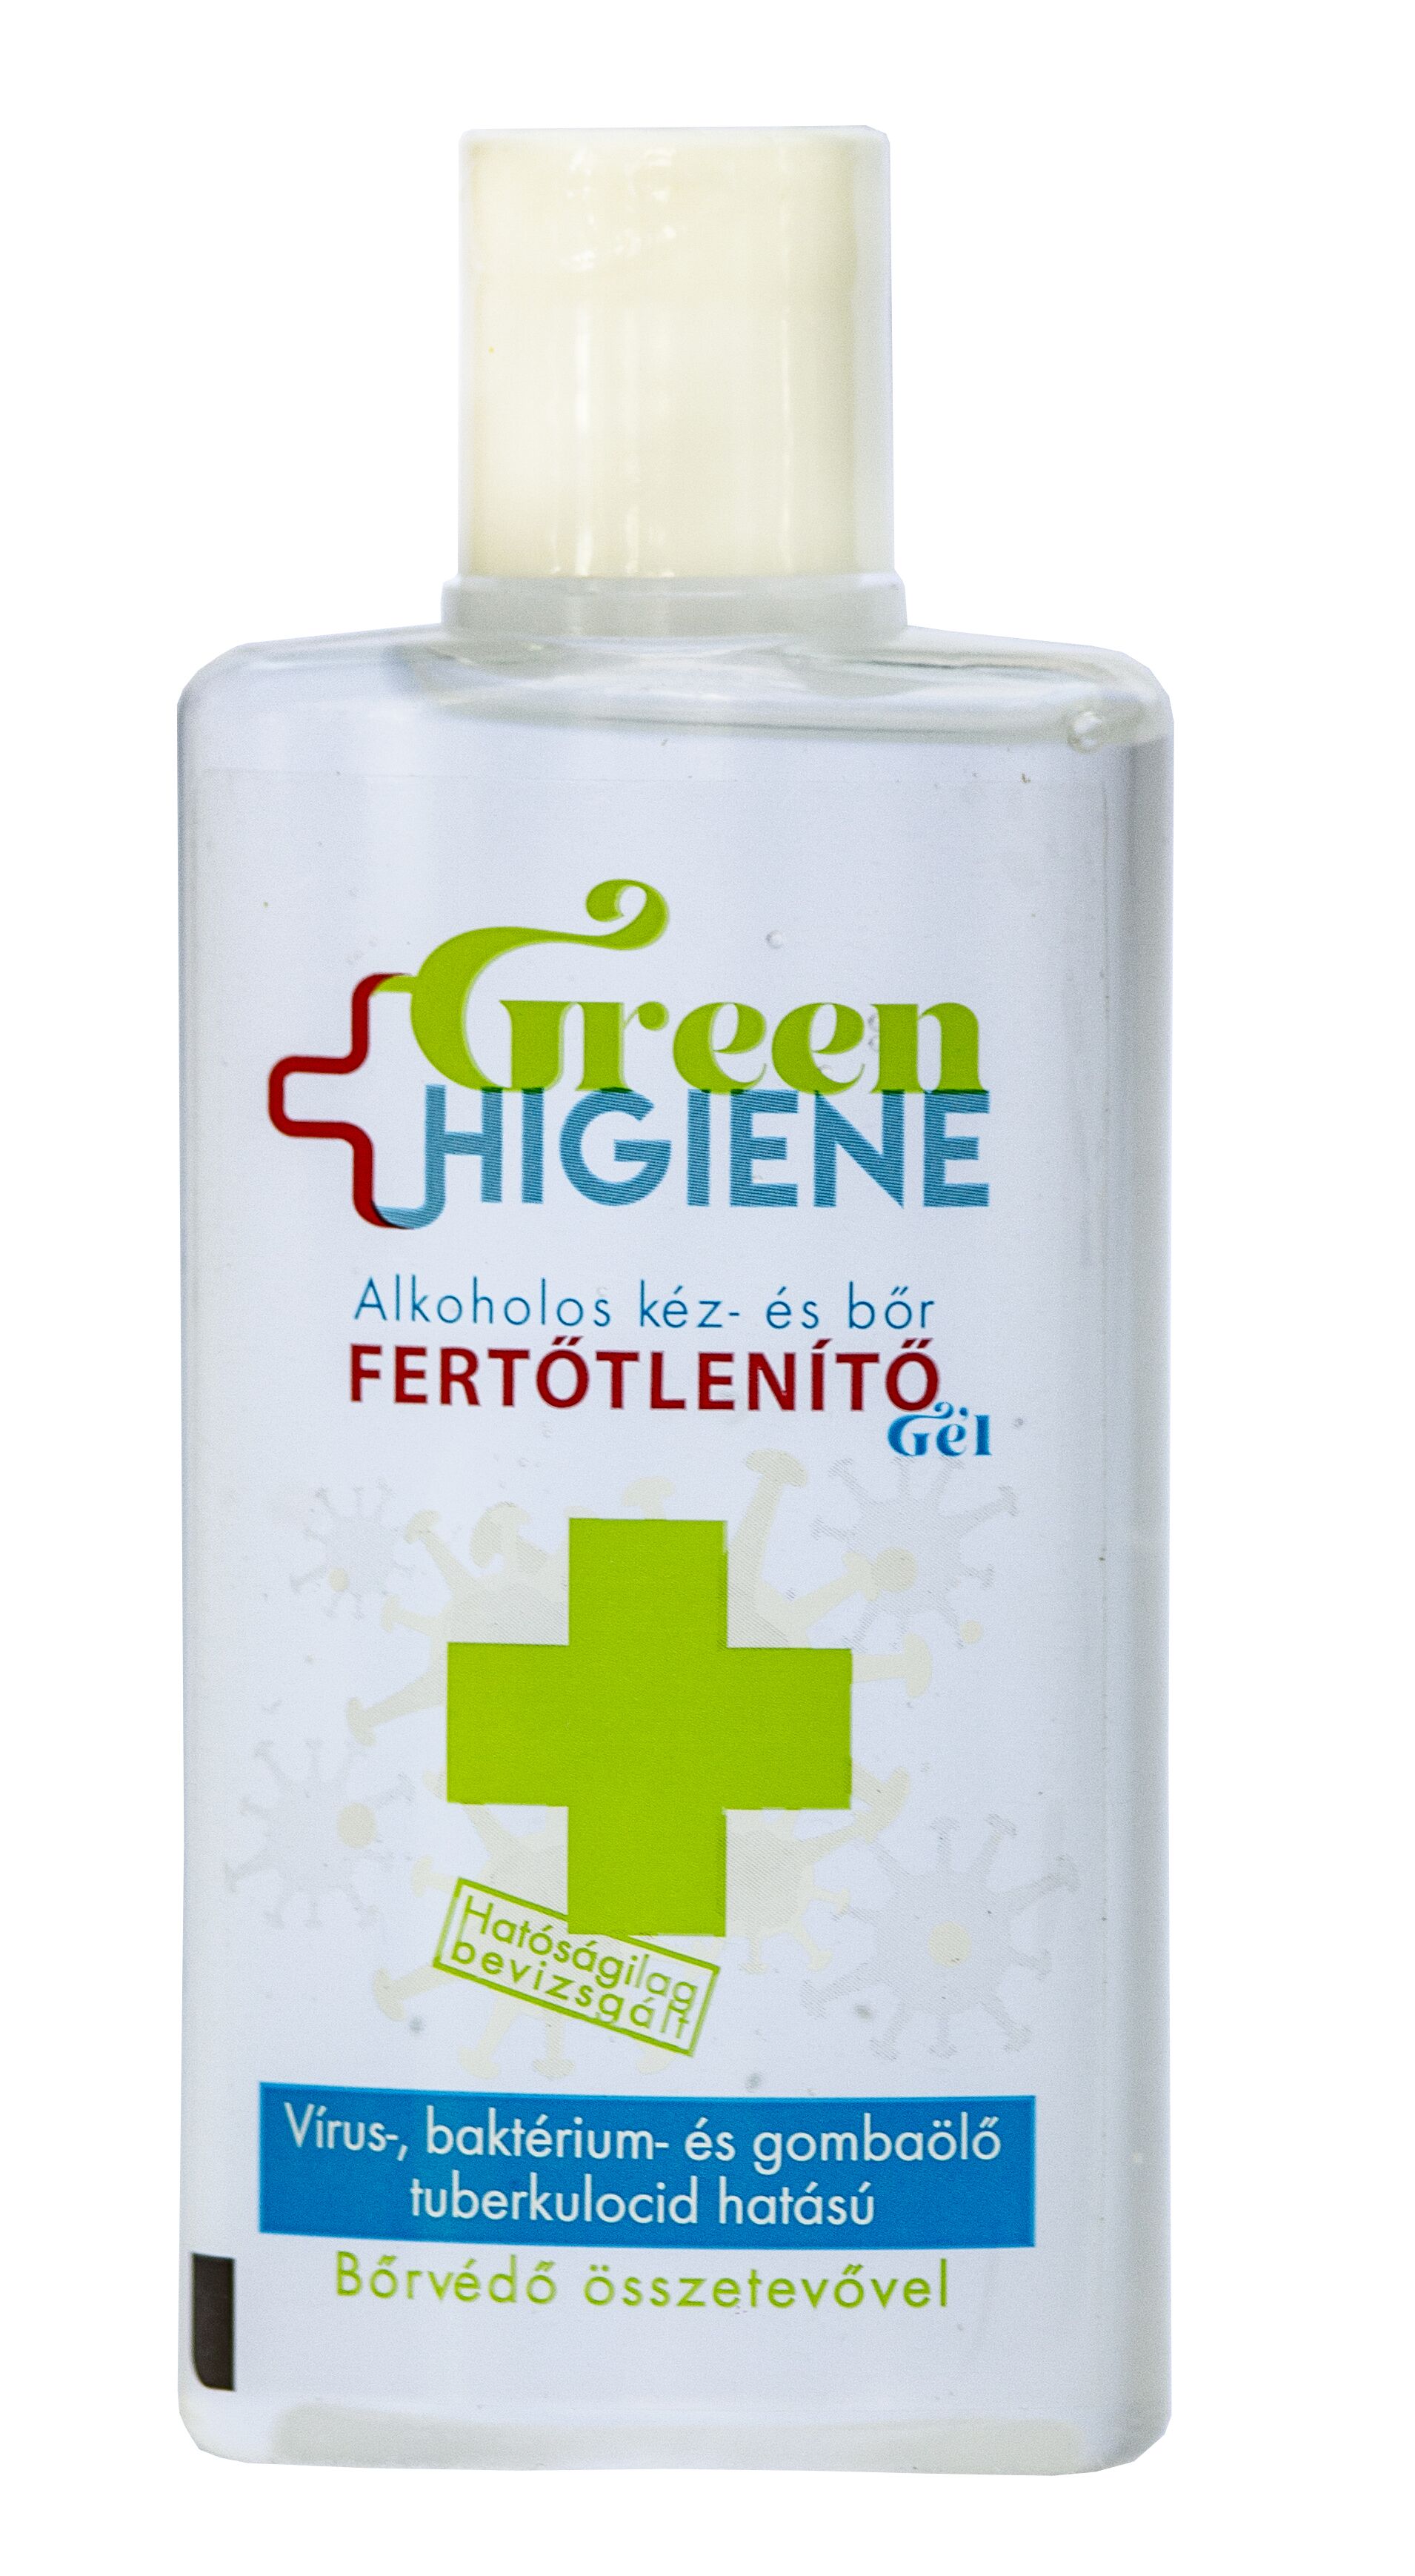  *Green Higiene Alkoholos Kéz- és bőrfertőtlenítő gél billenő kupakkal 100 ml